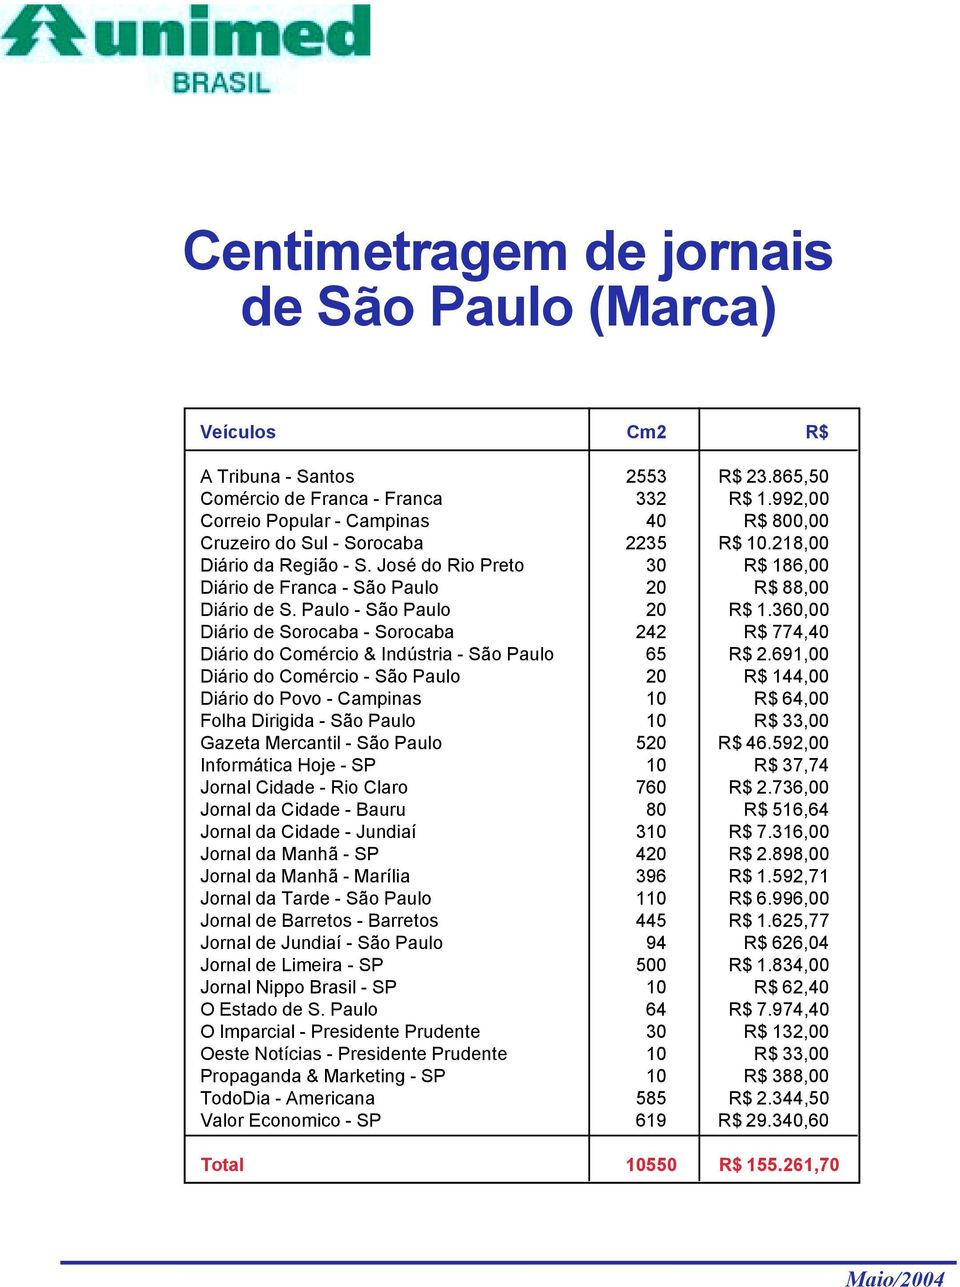 Paulo - São Paulo 20 R$ 1.360,00 Diário de Sorocaba - Sorocaba 242 R$ 774,40 Diário do Comércio & Indústria - São Paulo 65 R$ 2.